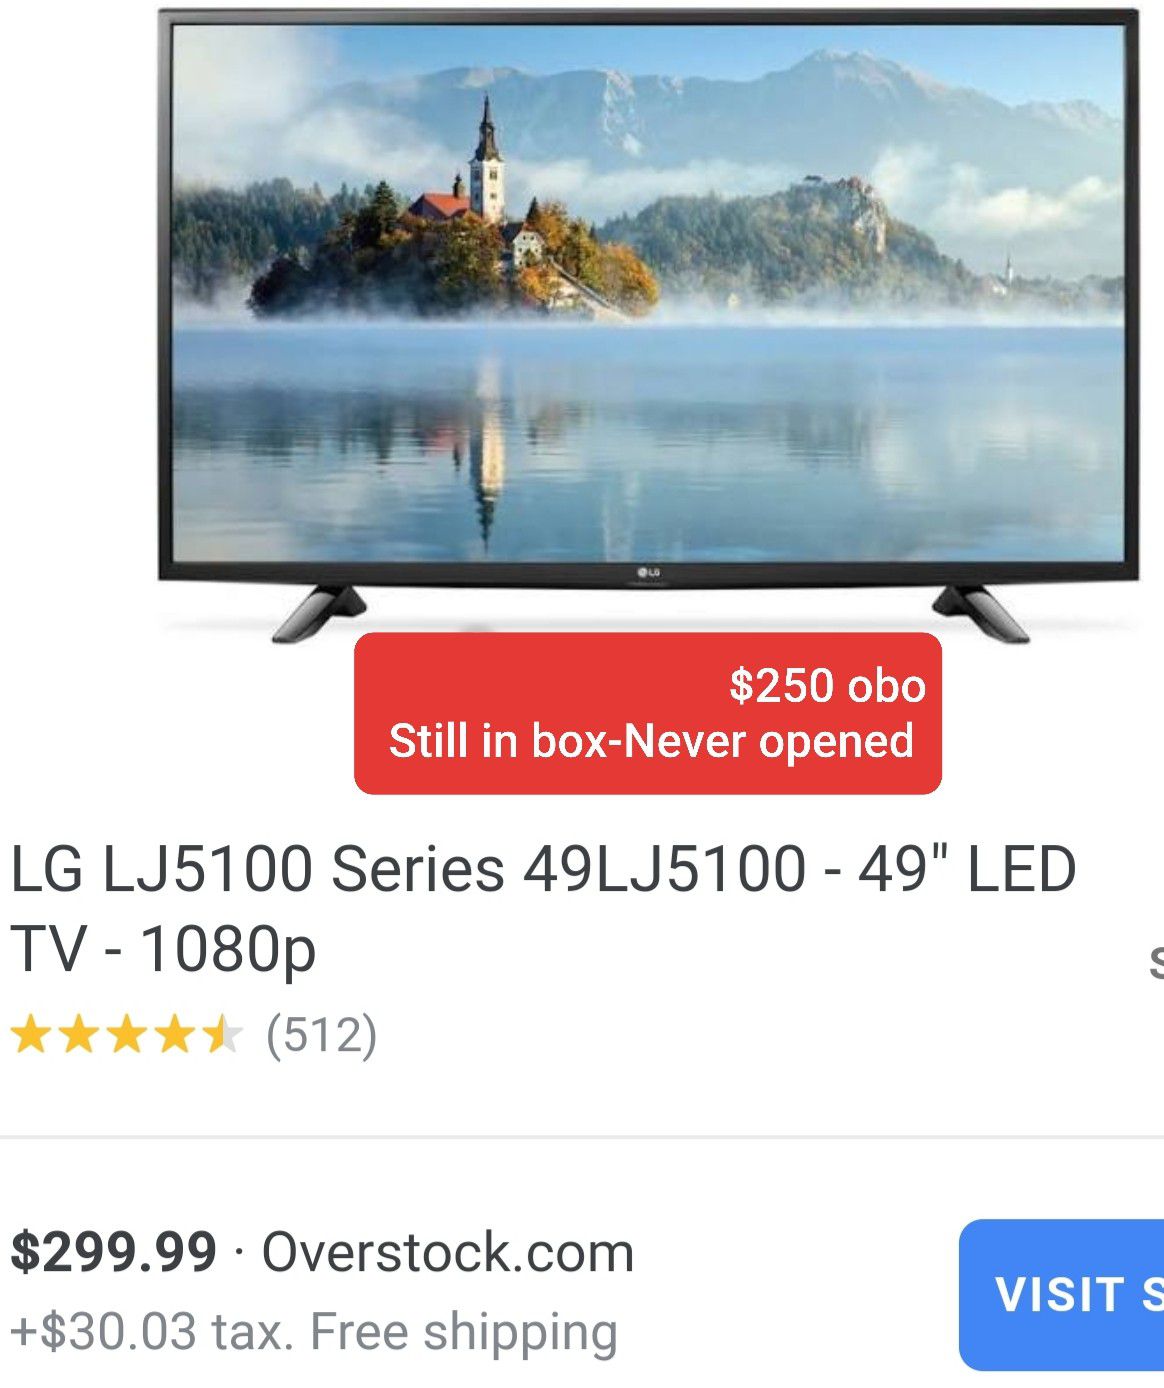 TV-LG 5100 -49"LED TV